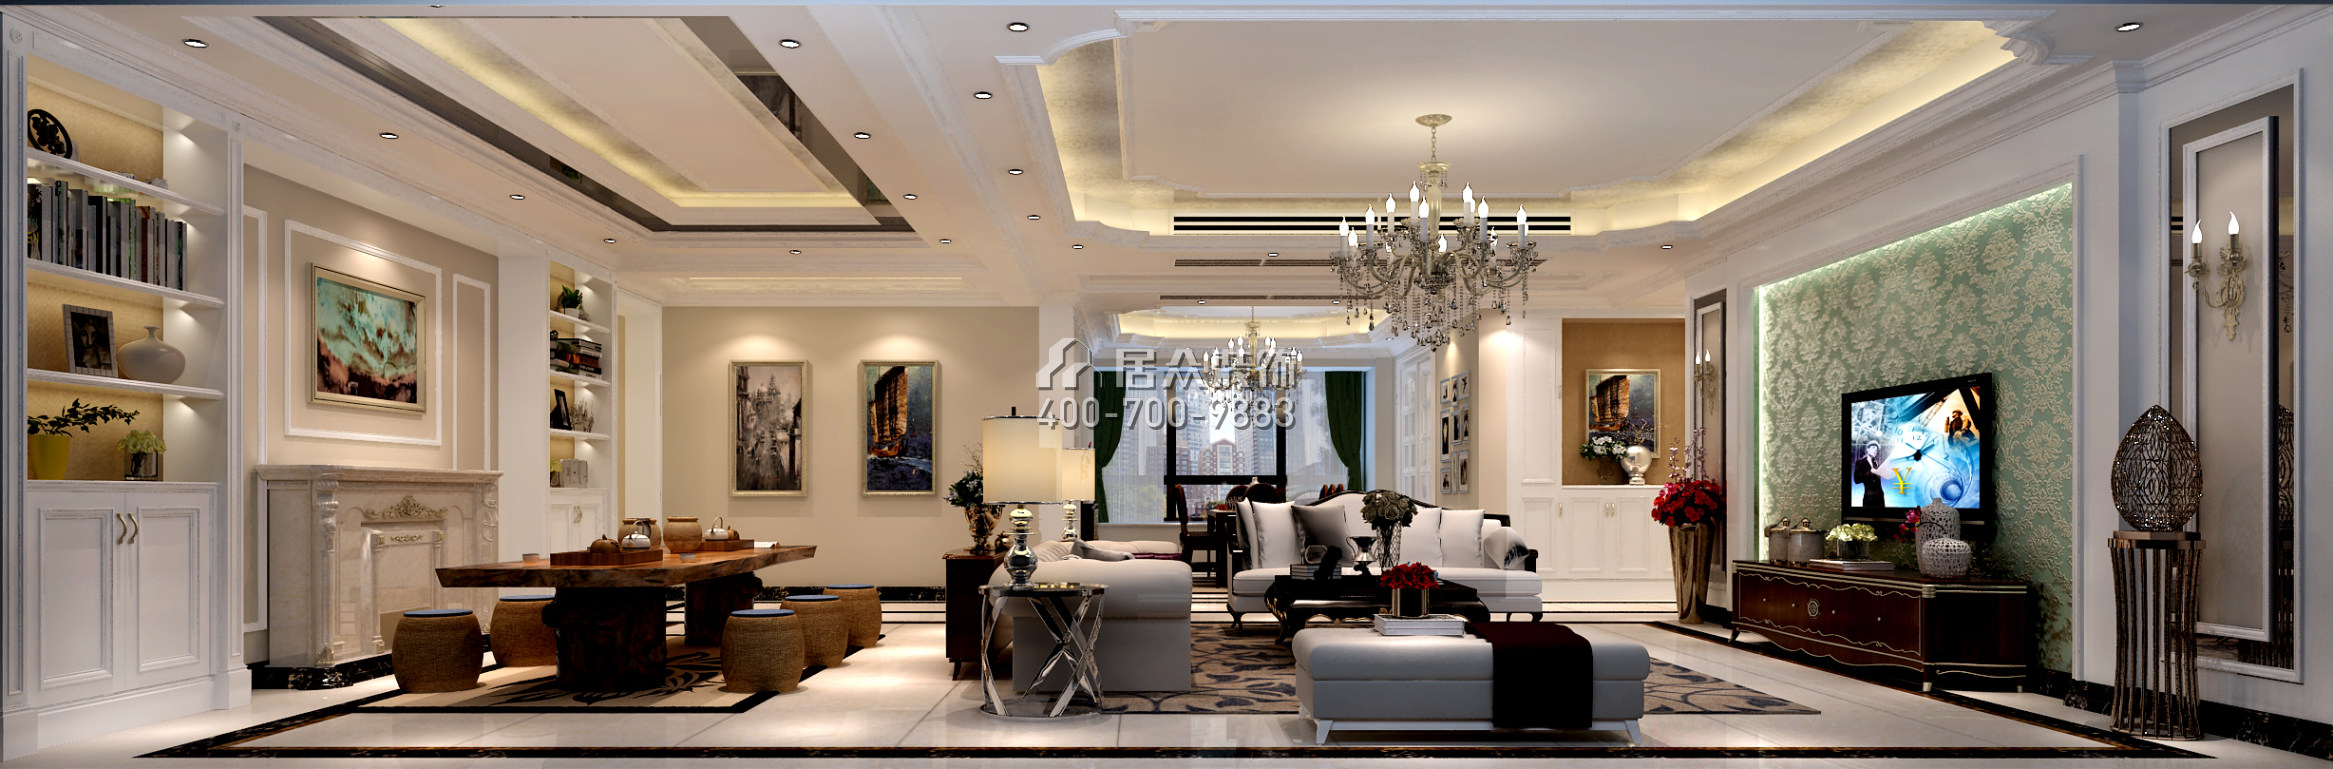 保利东江首府290平方米欧式风格平层户型客厅装修效果图